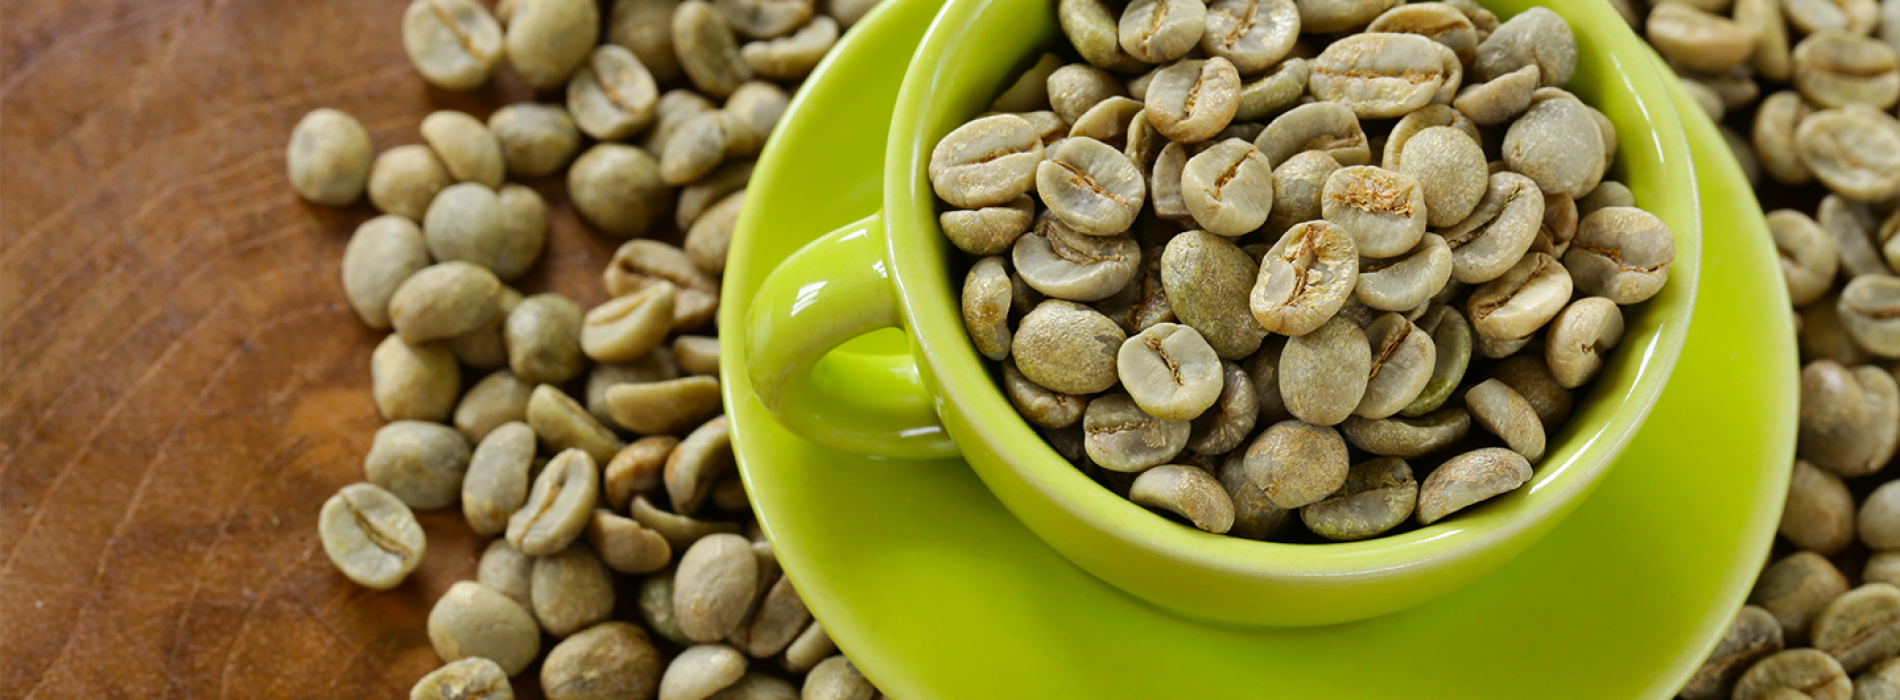 Probeer groene koffie: het is bewezen dat het de symptomen van prediabetes verbetert